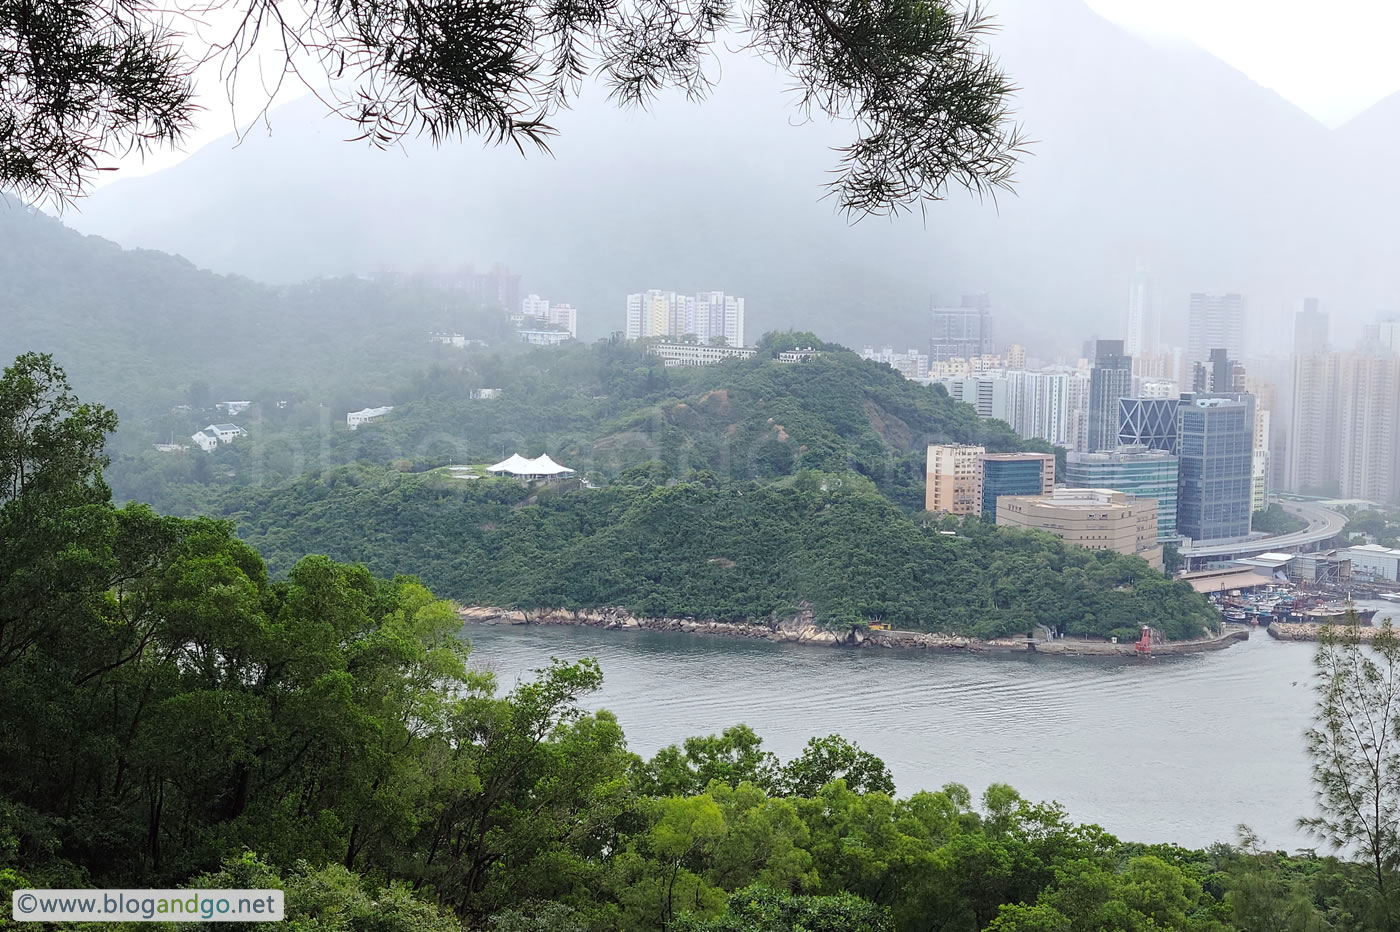 Devil's Peak - Looking to Hong Kong Island